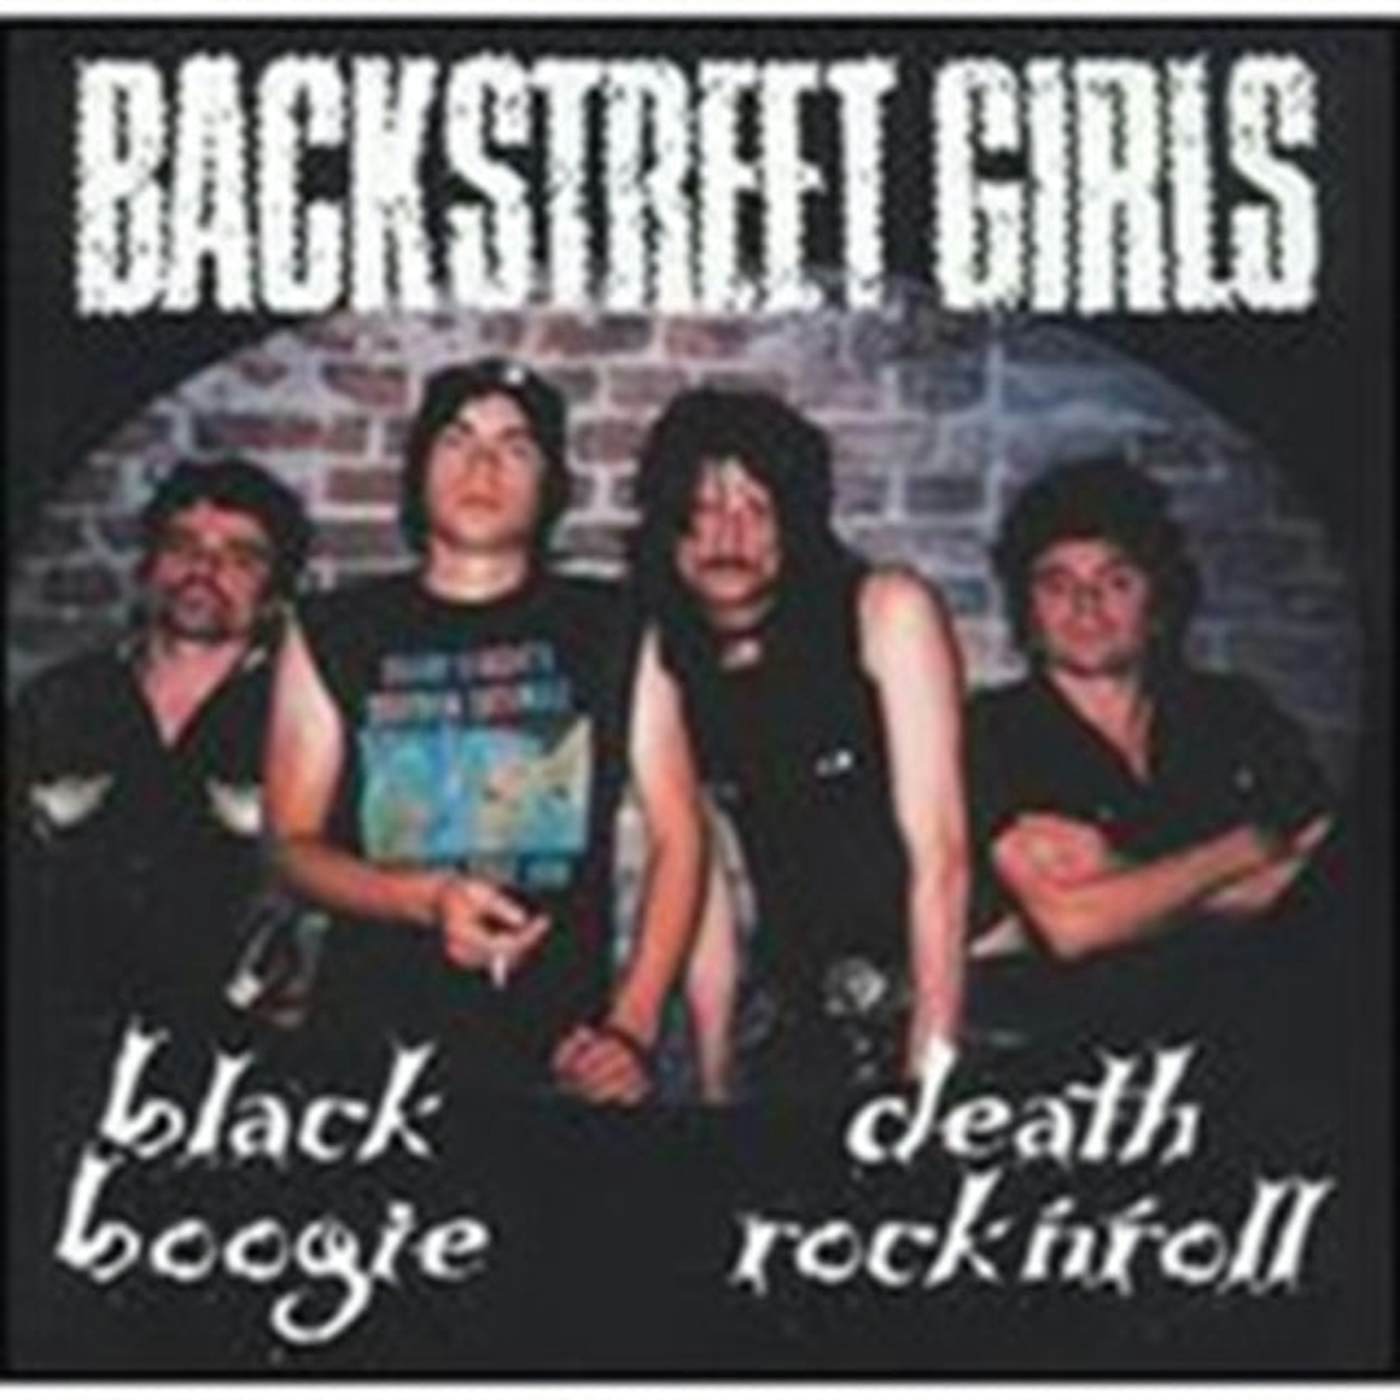 Backstreet Girls CD - Black Boogie Death Rock N'roll